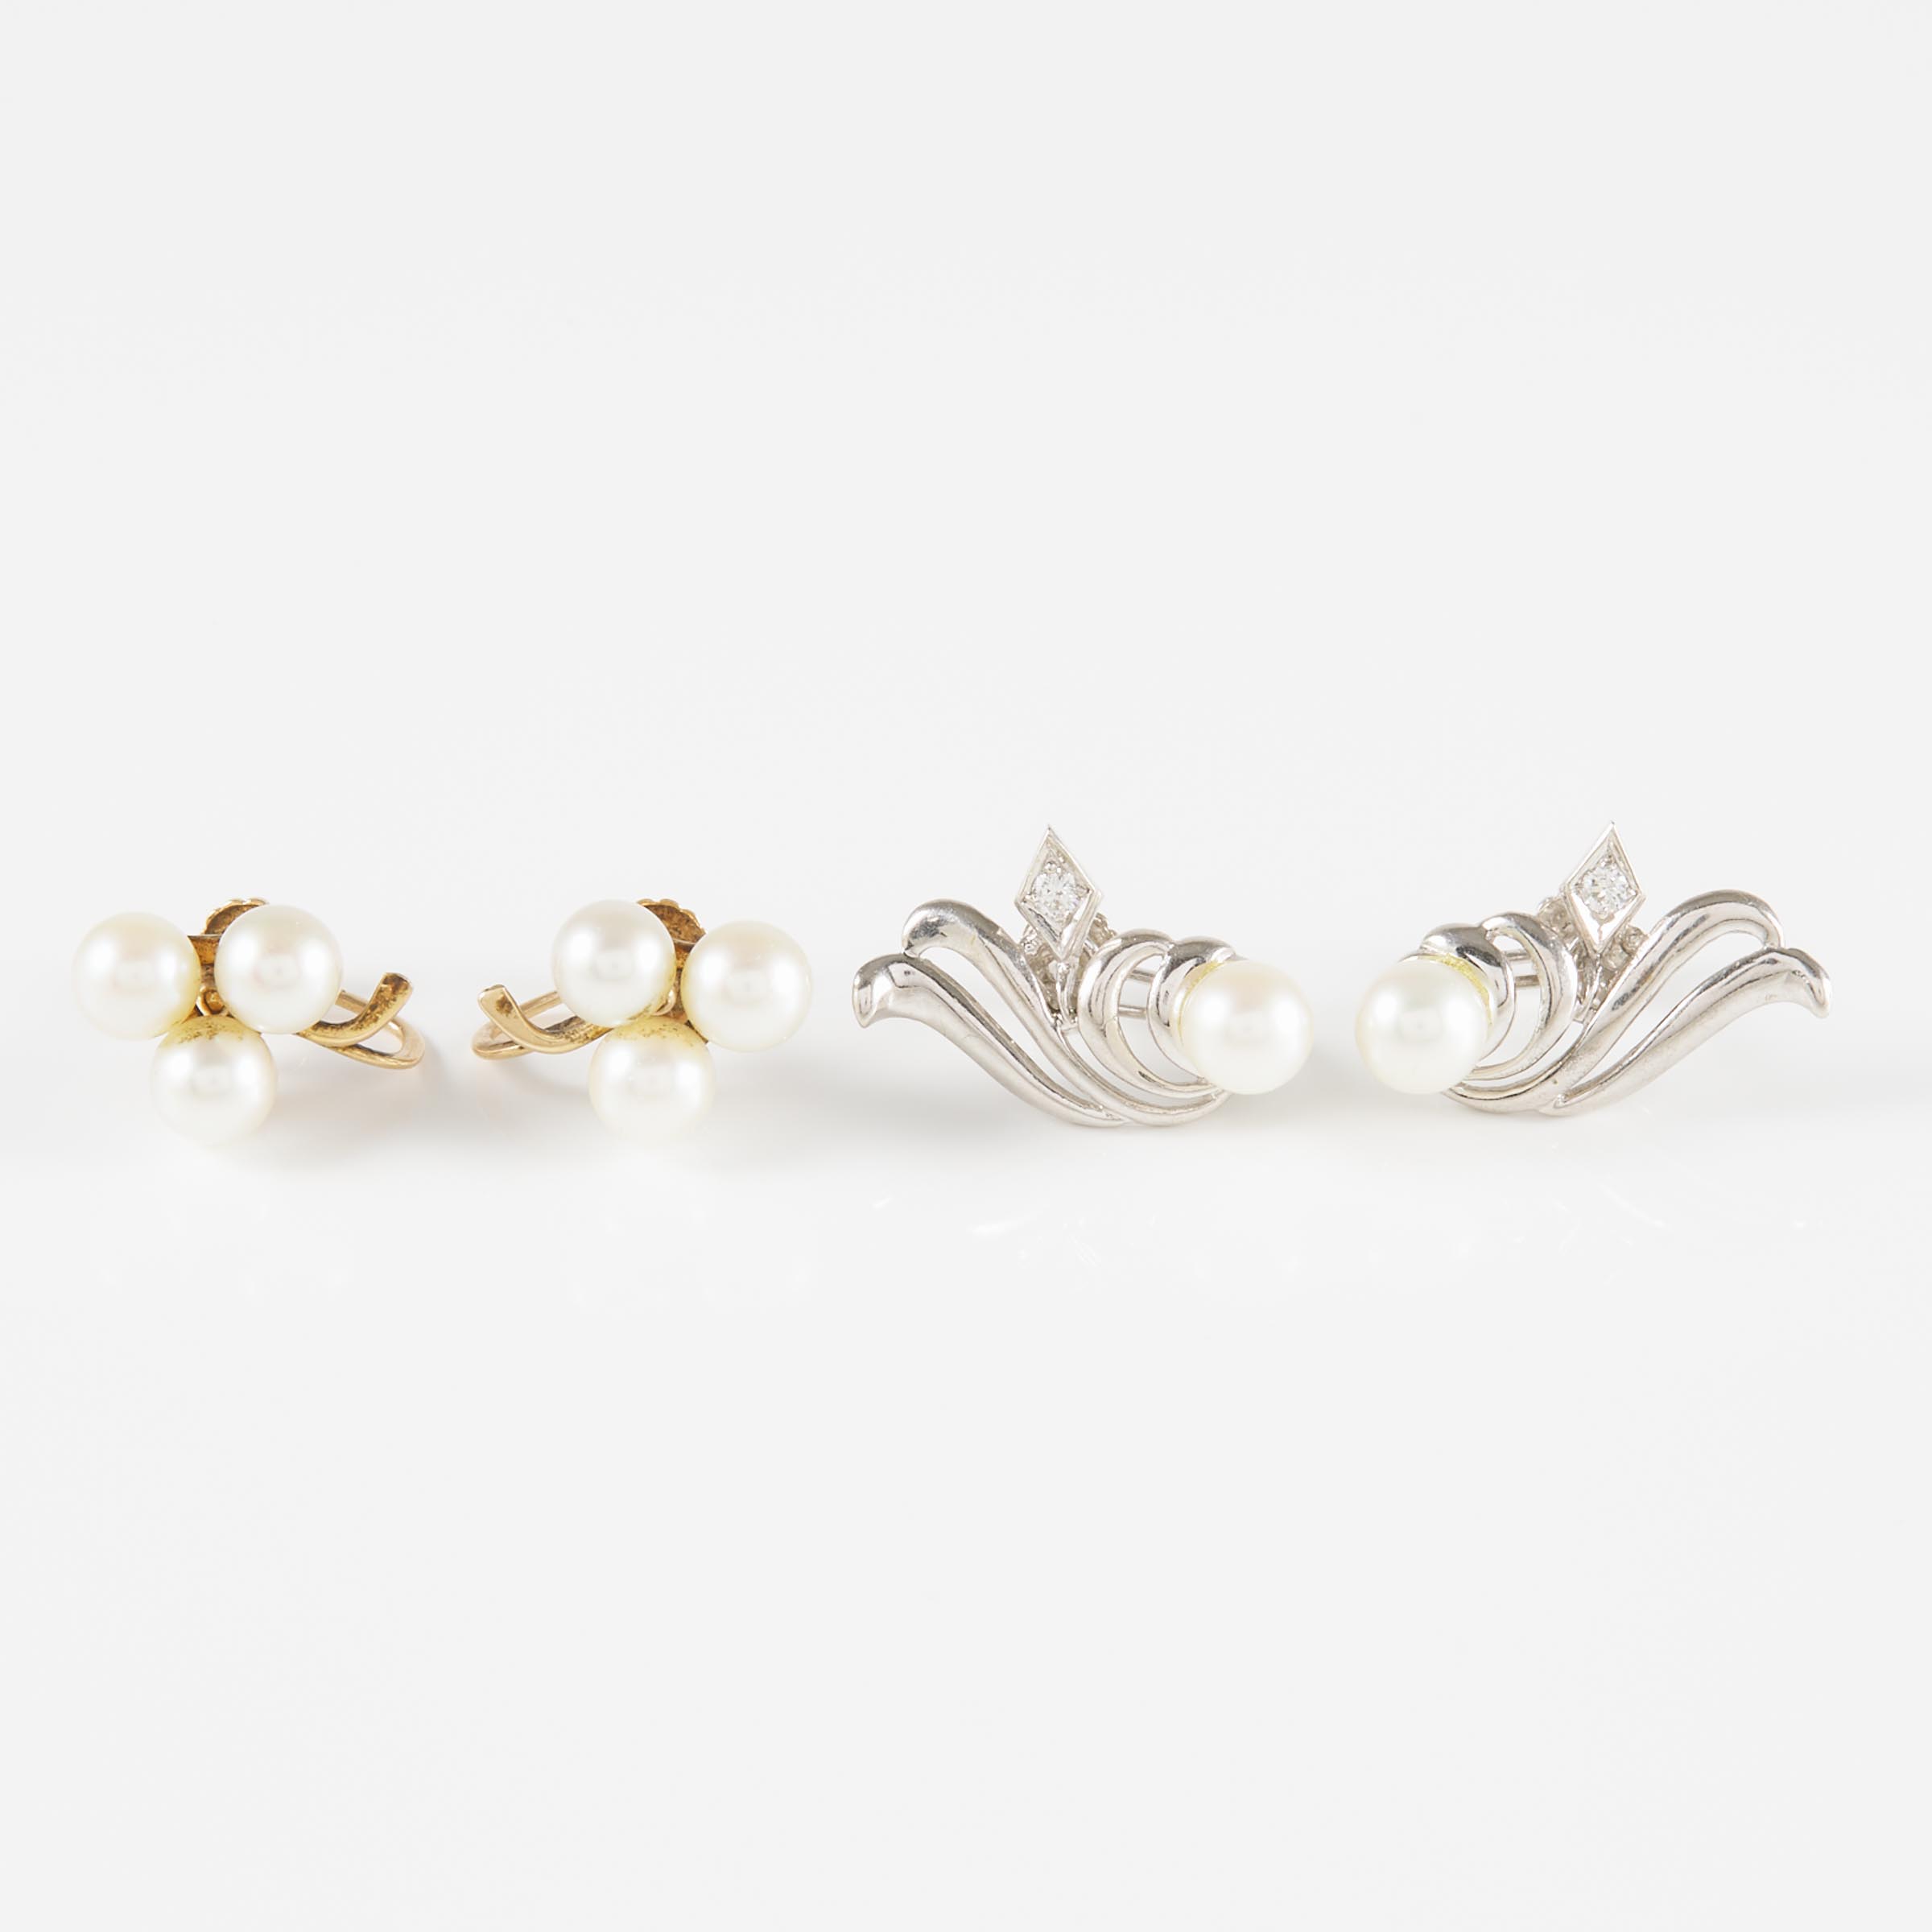 2 Pairs Of Lorie 14k Gold Screw-Back Earrings